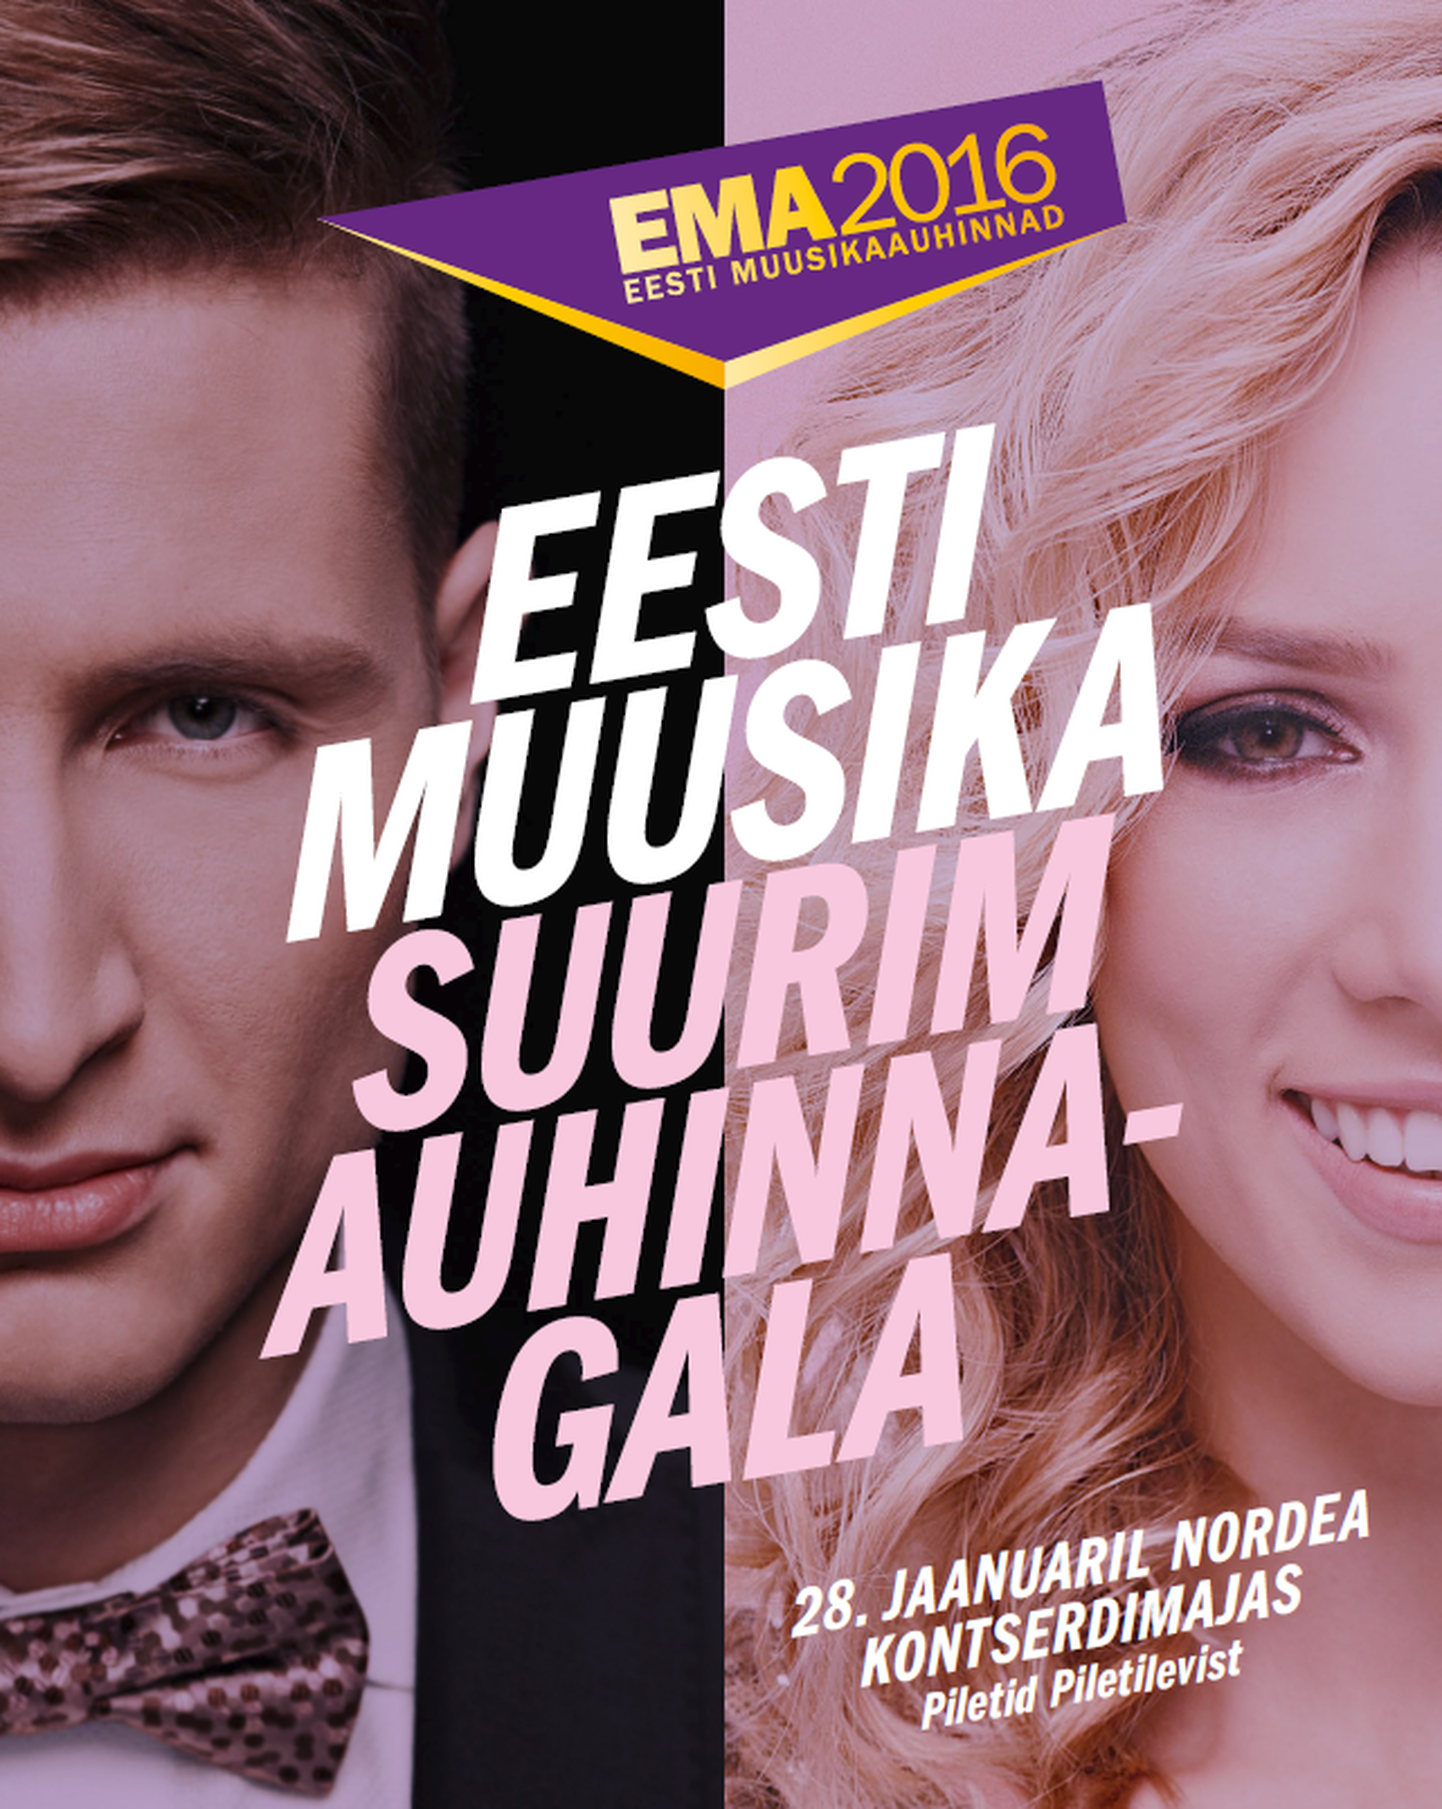 Eesti Muusikaauhinna gala 2016